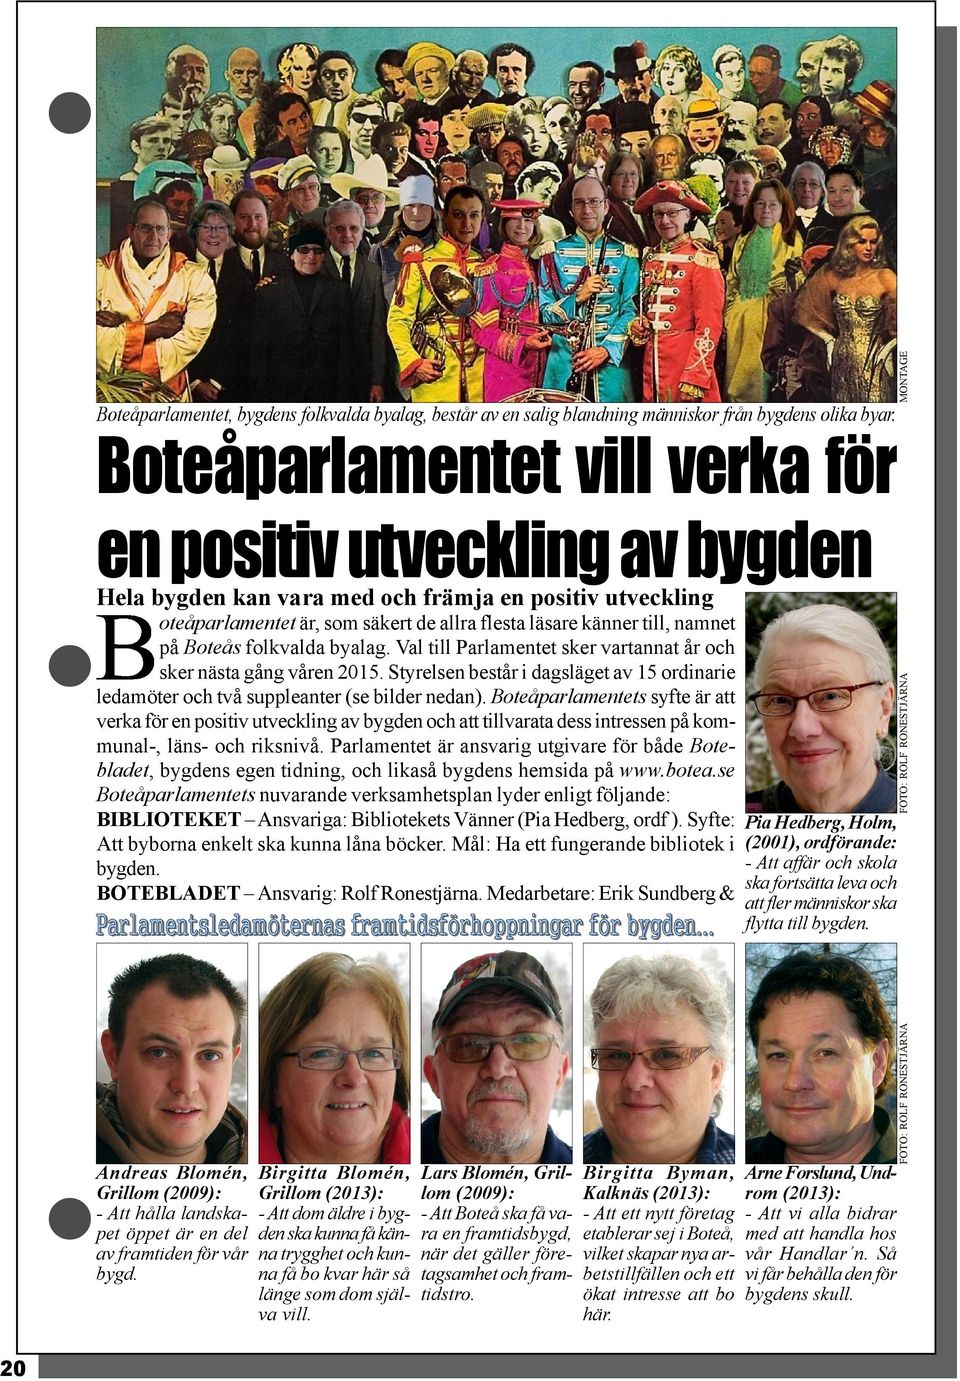 oteåparlamentet är, som säkert de allra flesta läsare känner till, namnet på Boteås folkvalda byalag. Val till Parlamentet sker vartannat år och sker nästa gång våren 2015.